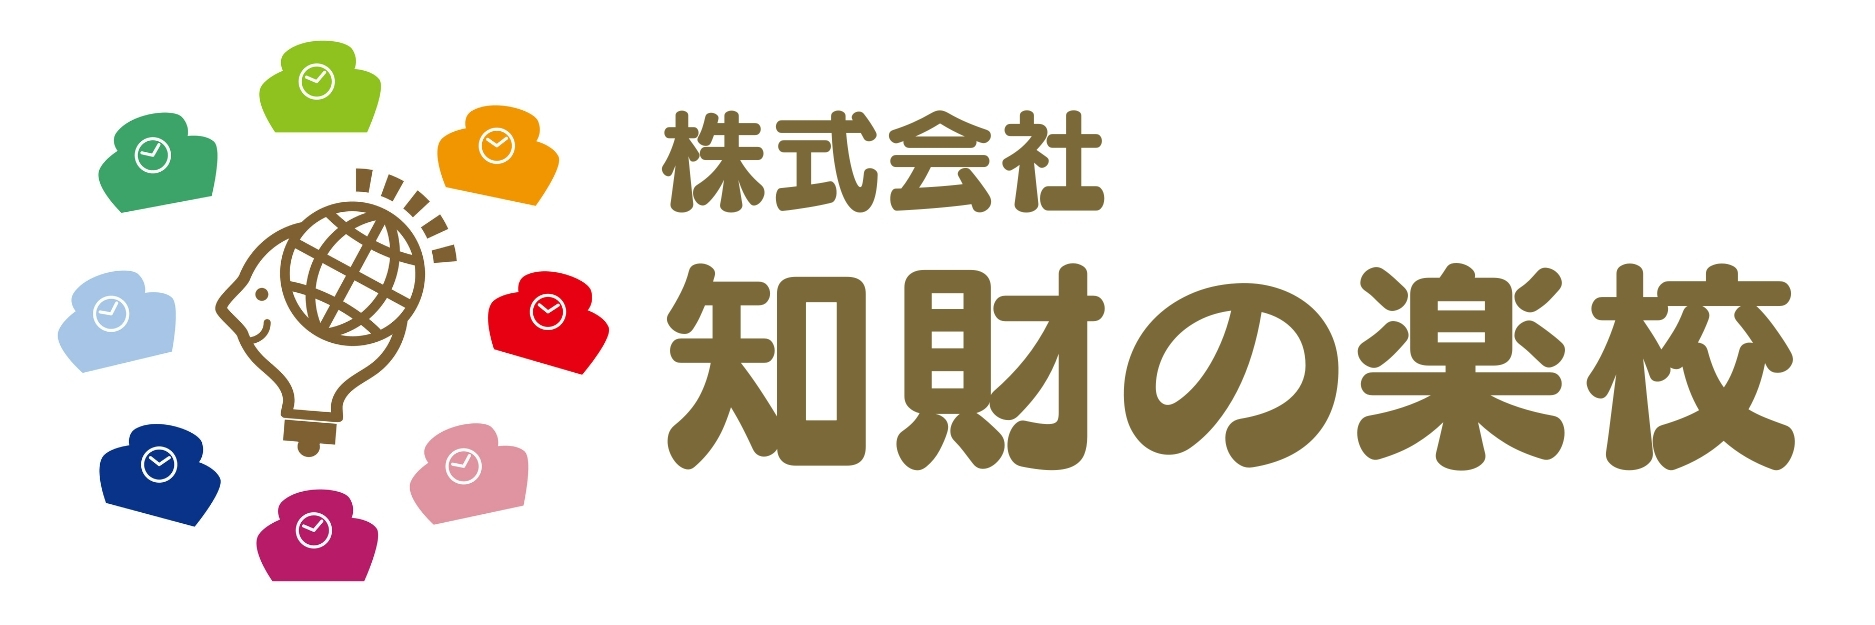 特許の楽校 produced by (株)知財の楽校